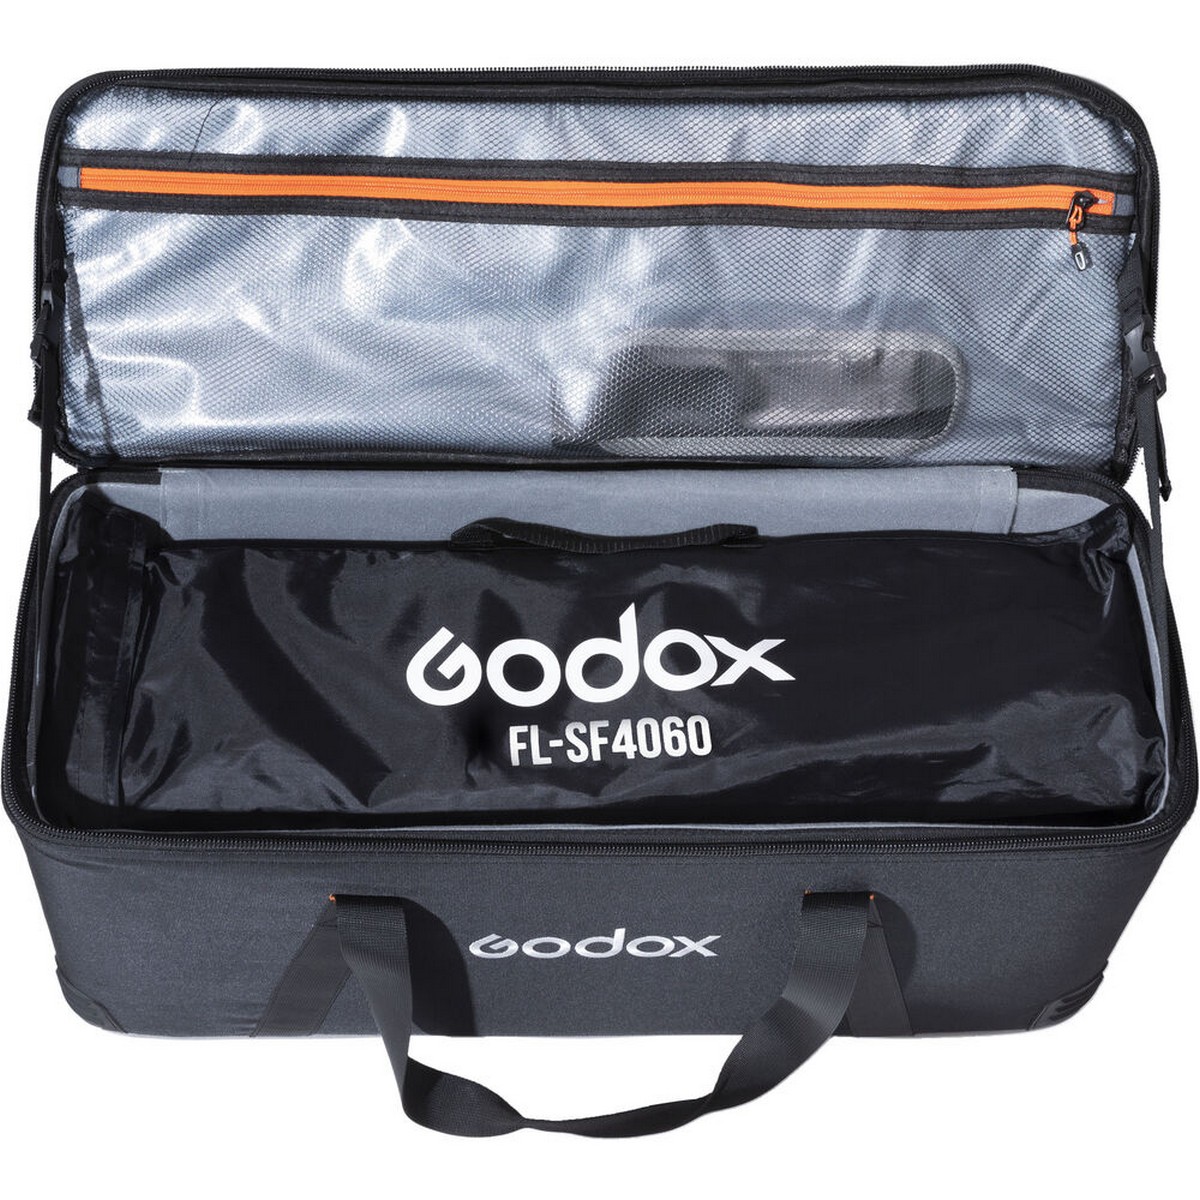 Godox FL100-K2 Kit aus 2x LED Lampe (2x FL100) und Zubehör